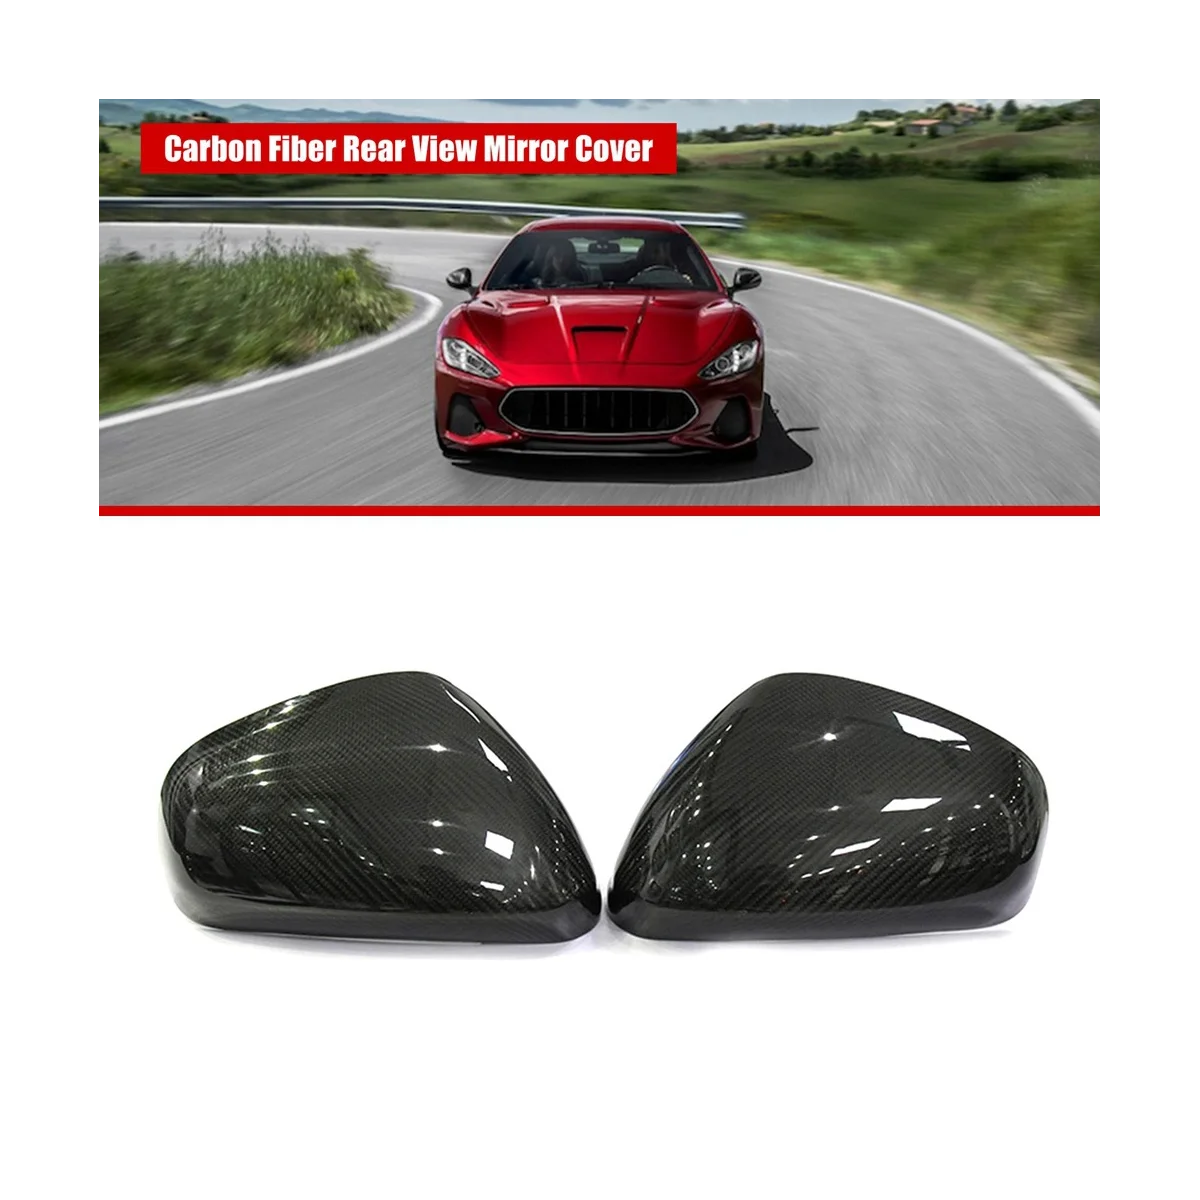 

Car Carbon Fiber Rear View Mirror Cover for Maserati Gran Turismo & Gran Cabrio Quattroporte Add on Style Mirror Caps